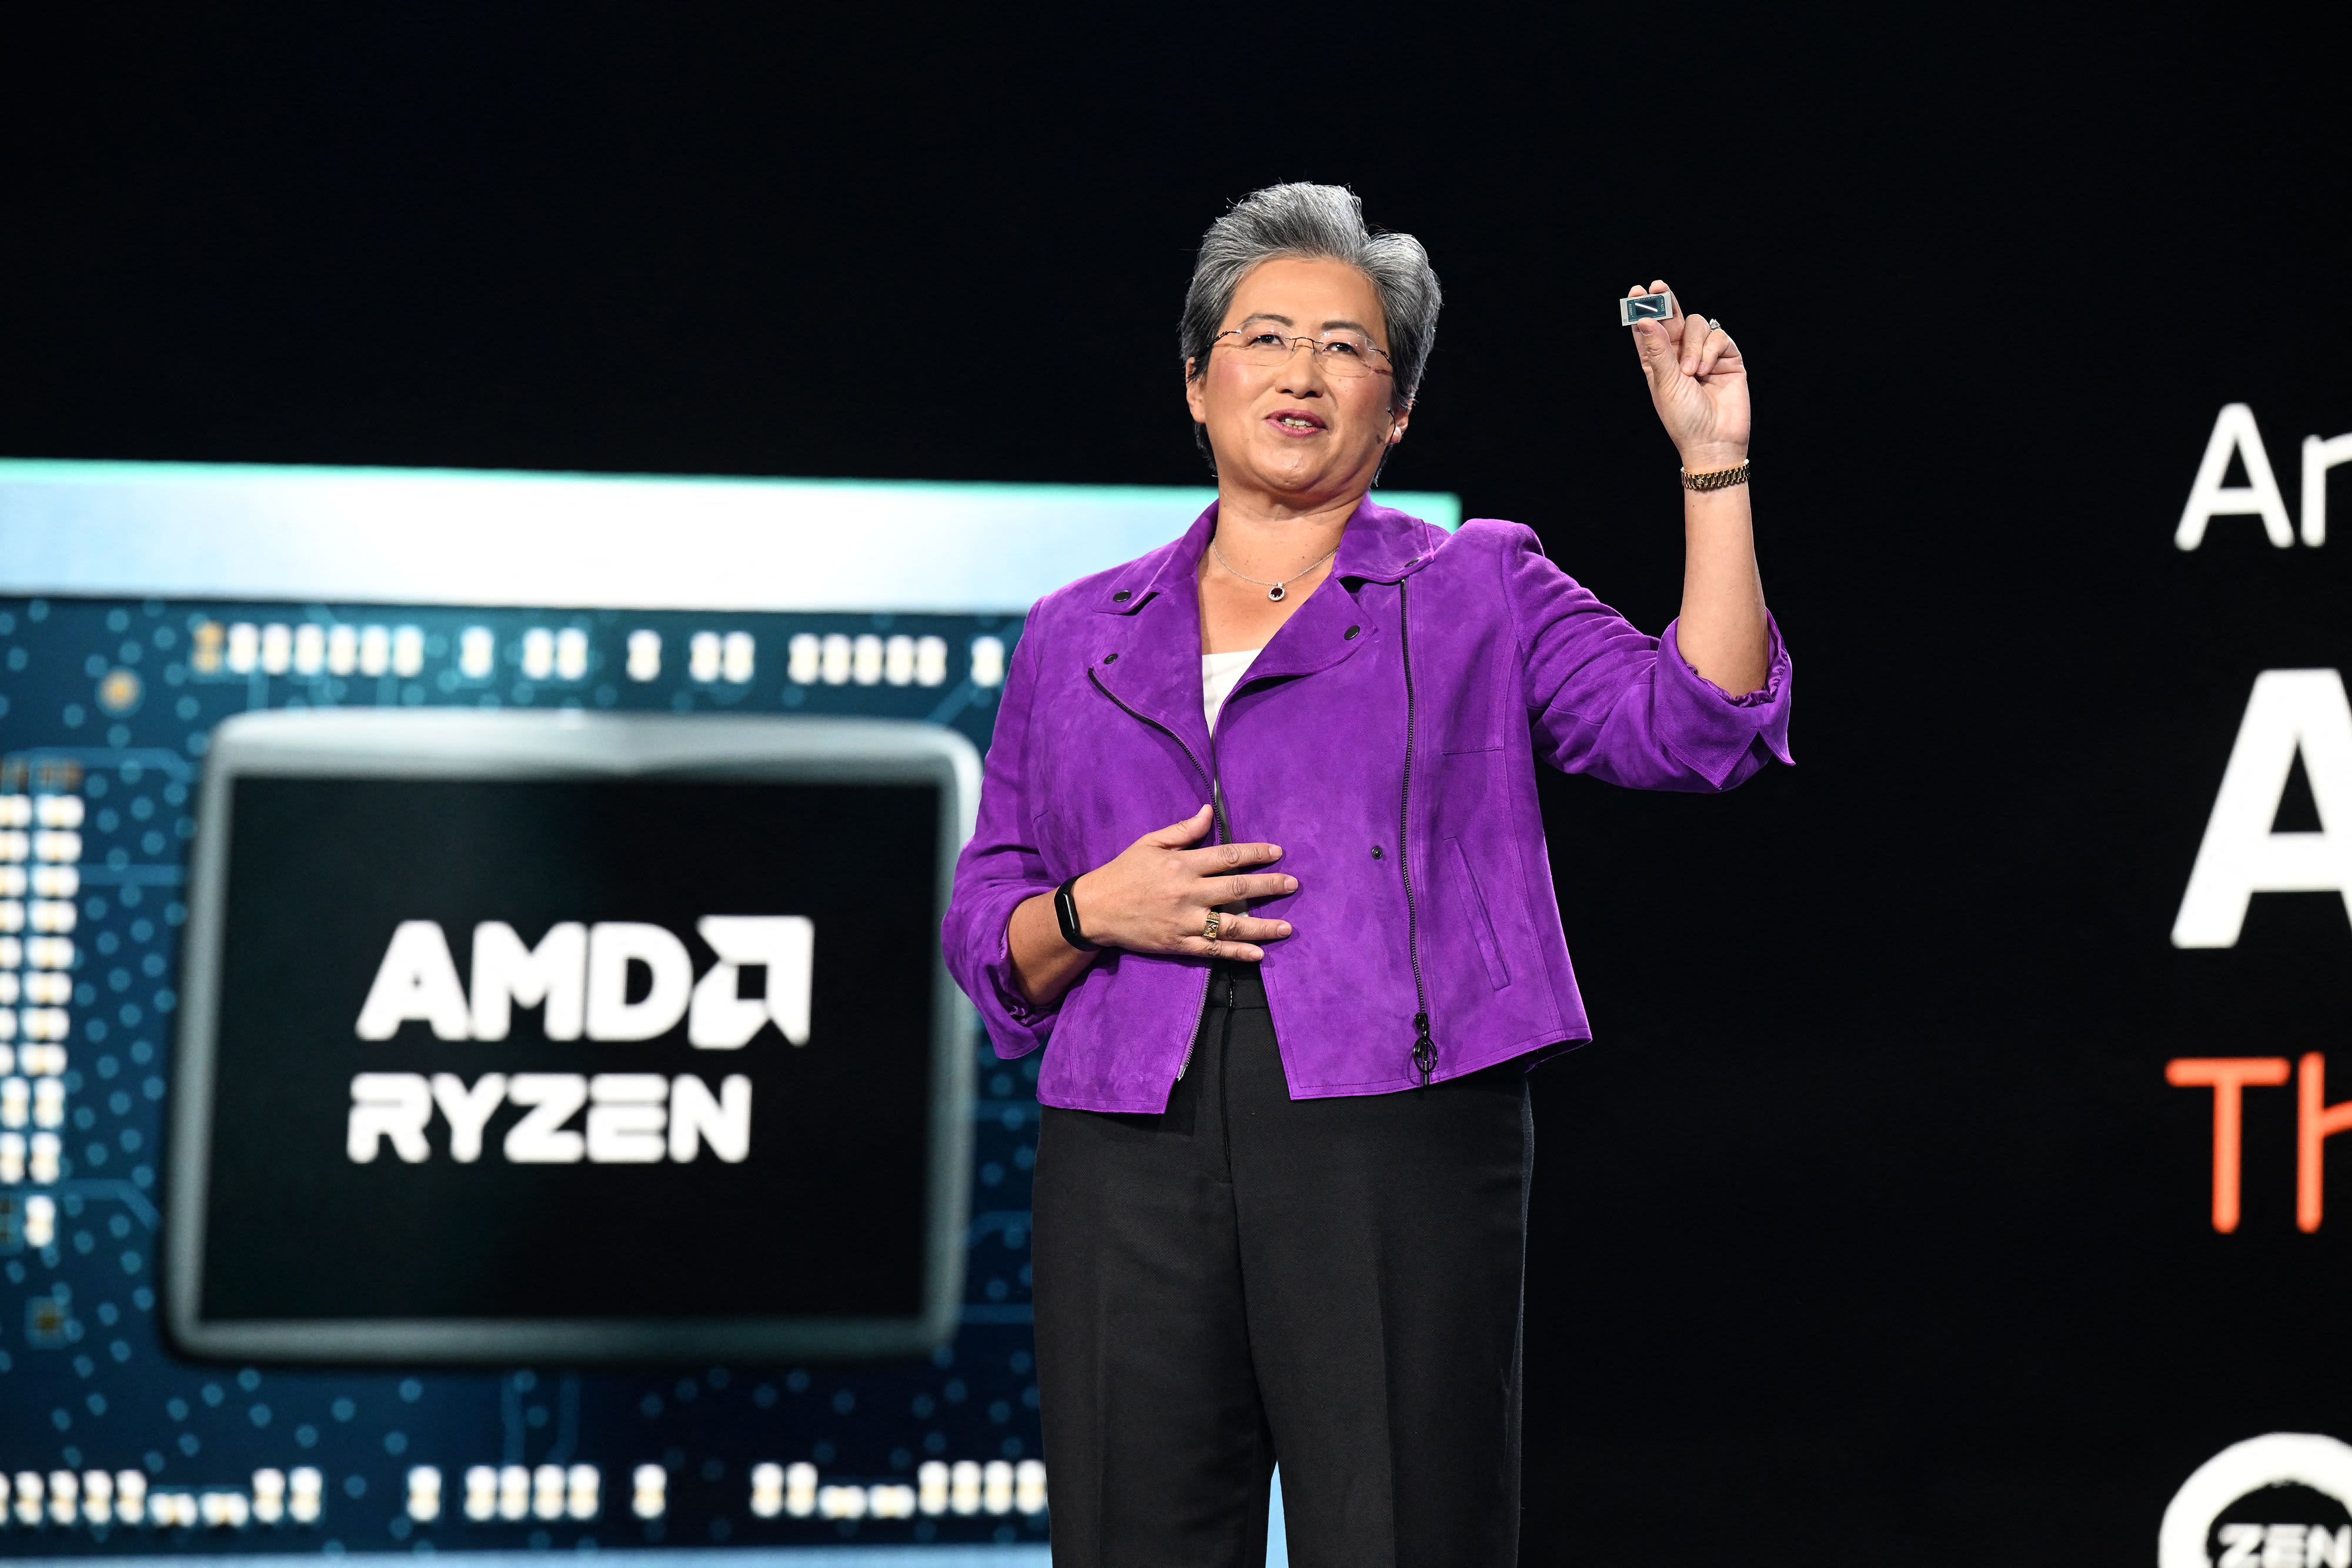 AMD prévoit de vendre pour 2 milliards de dollars de puces d'intelligence artificielle l'année prochaine